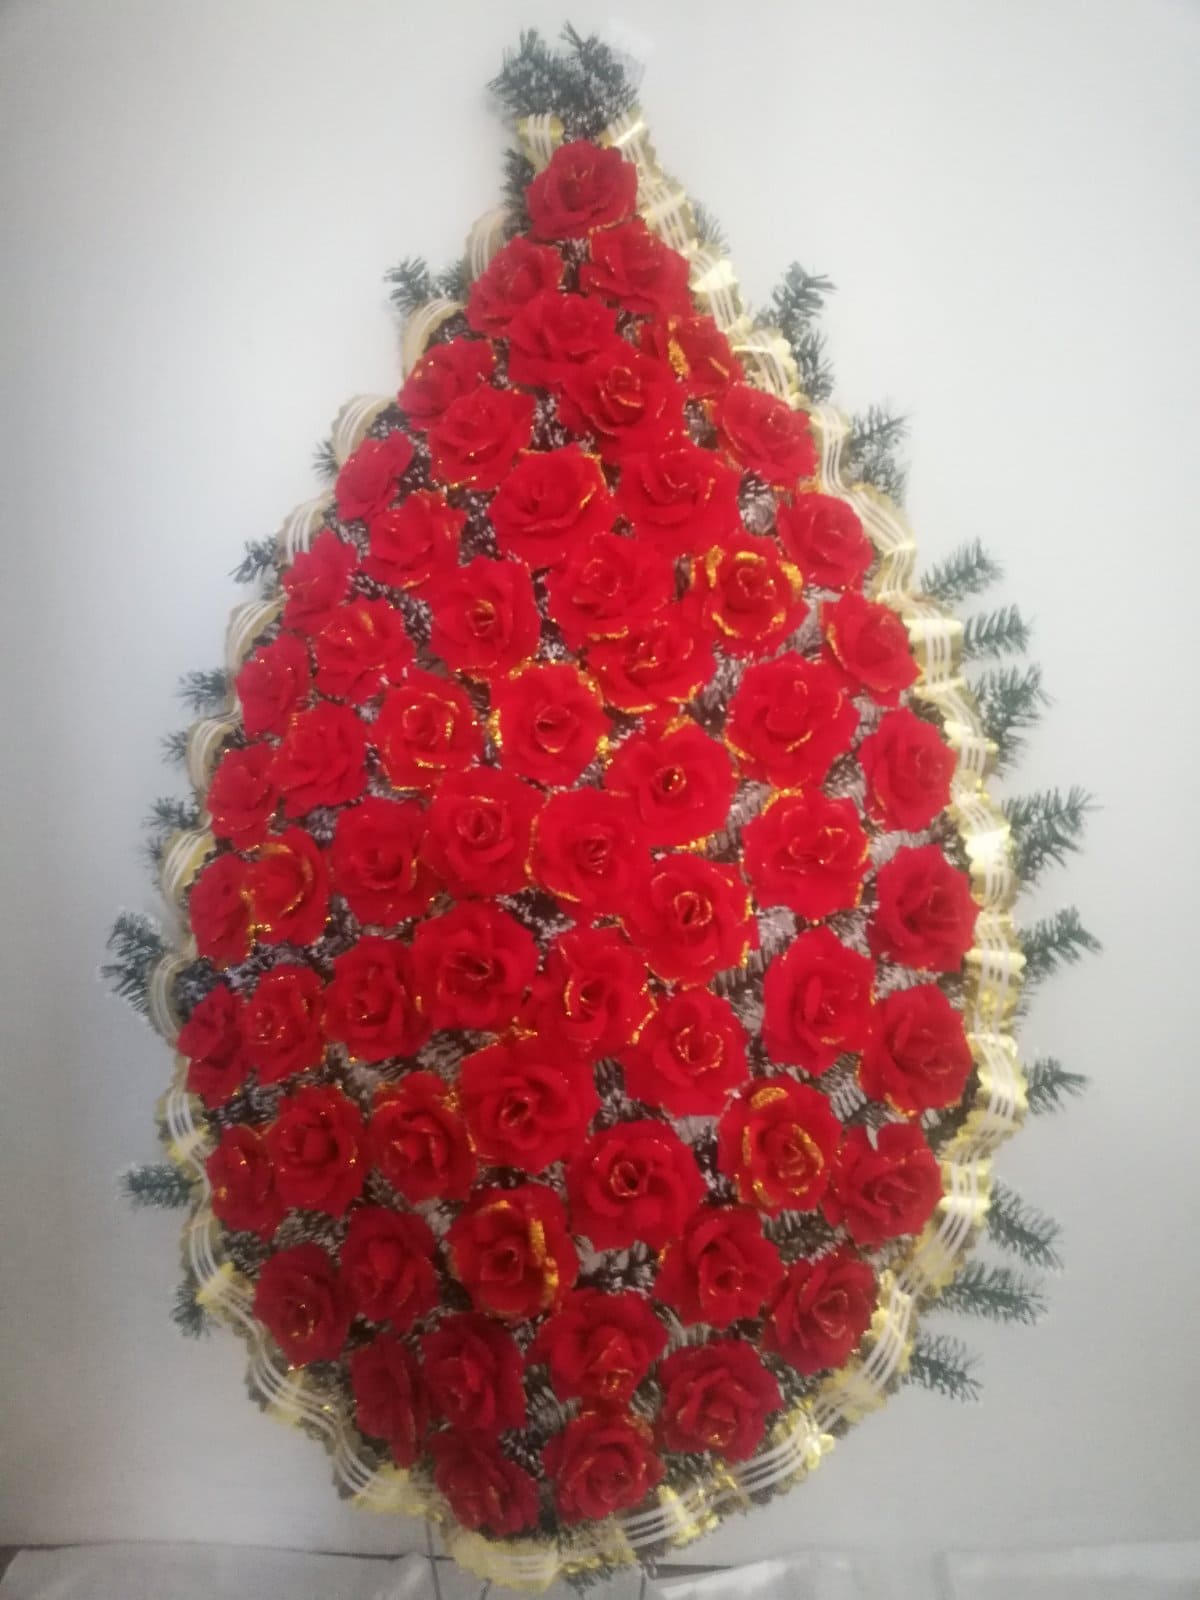 Ритуальные венки и корзины из искусственных цветов от 40 руб в Витебске. Гос. предприятие